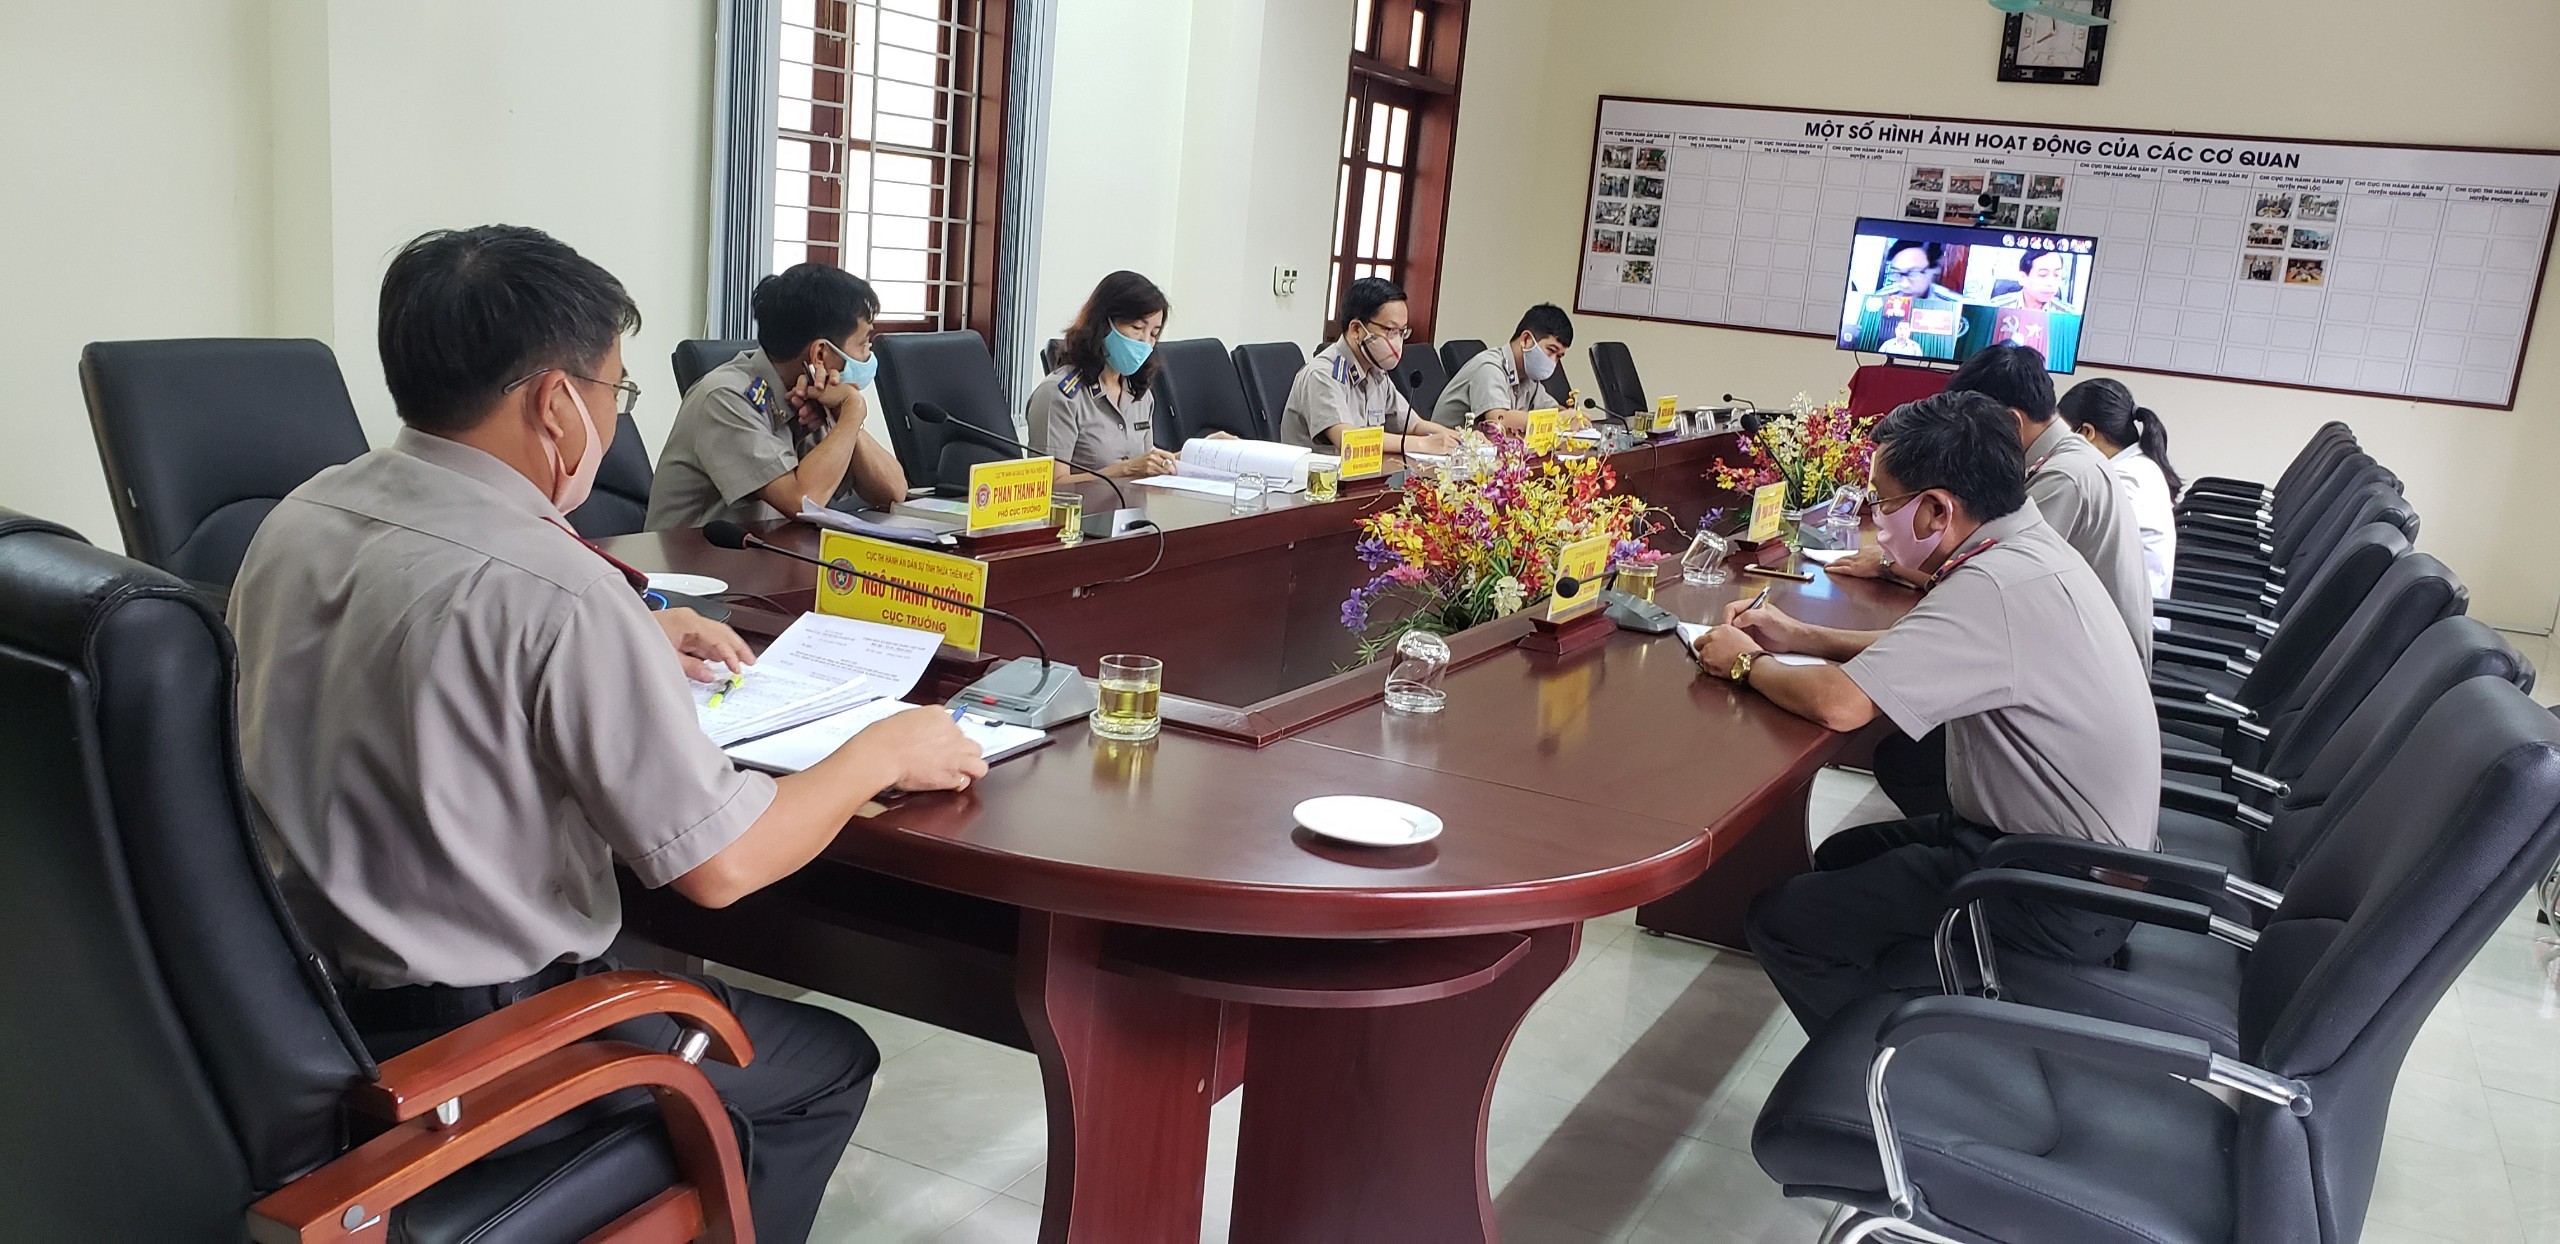 Cục Thi hành án dân sự tinh Thừa Thiên Huế tổ chức họp trực tuyến để nghe những khó khăn vướng mắc và đề xuất, kiến nghị trong việc thực hiện giao việc cho công chức làm việc tại nhà thông qua ứng dụng công nghệ thông tin.